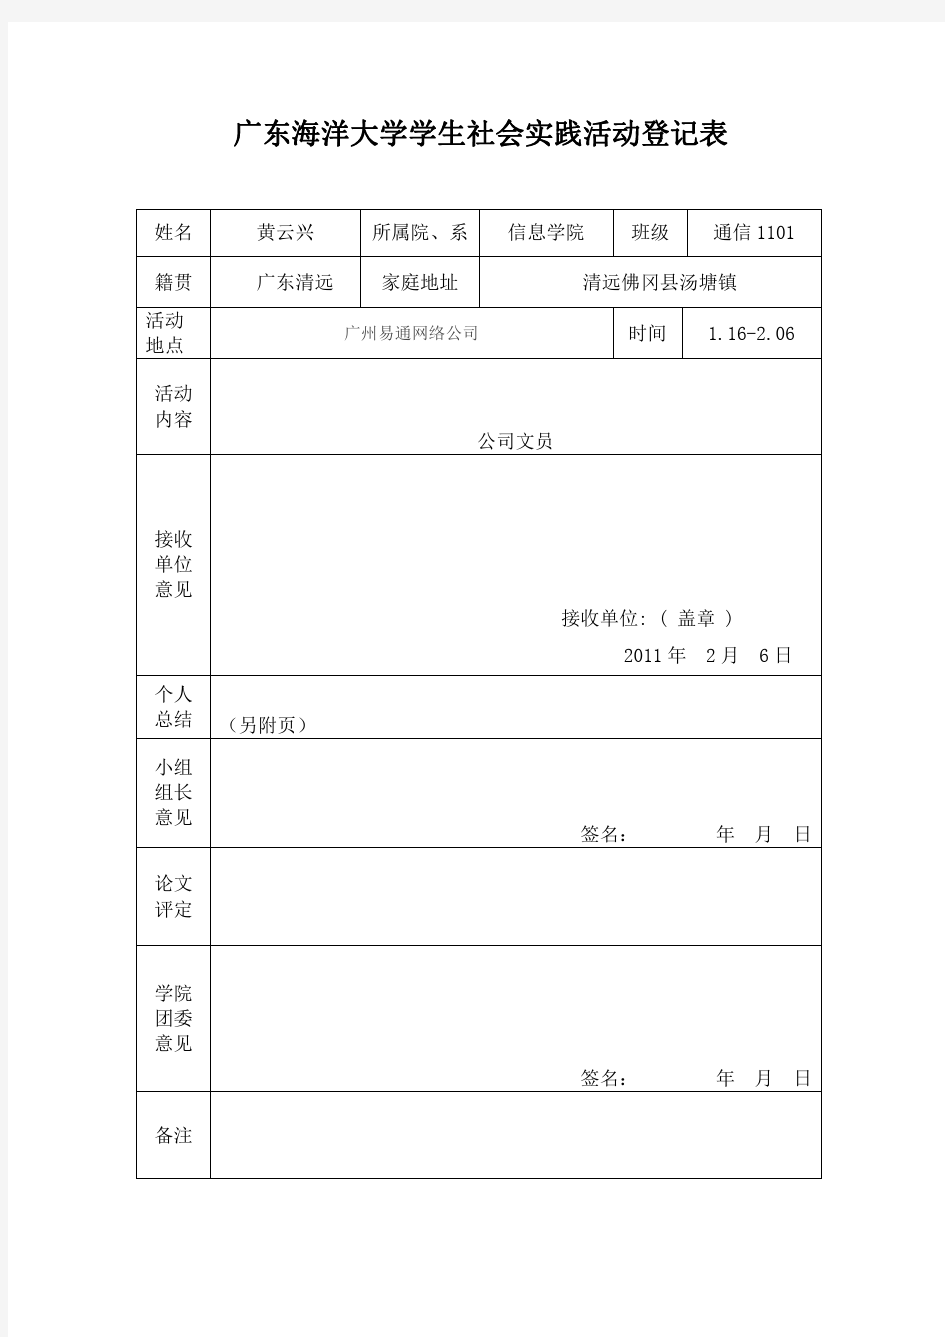 广东海洋大学学生社会实践活动登记表